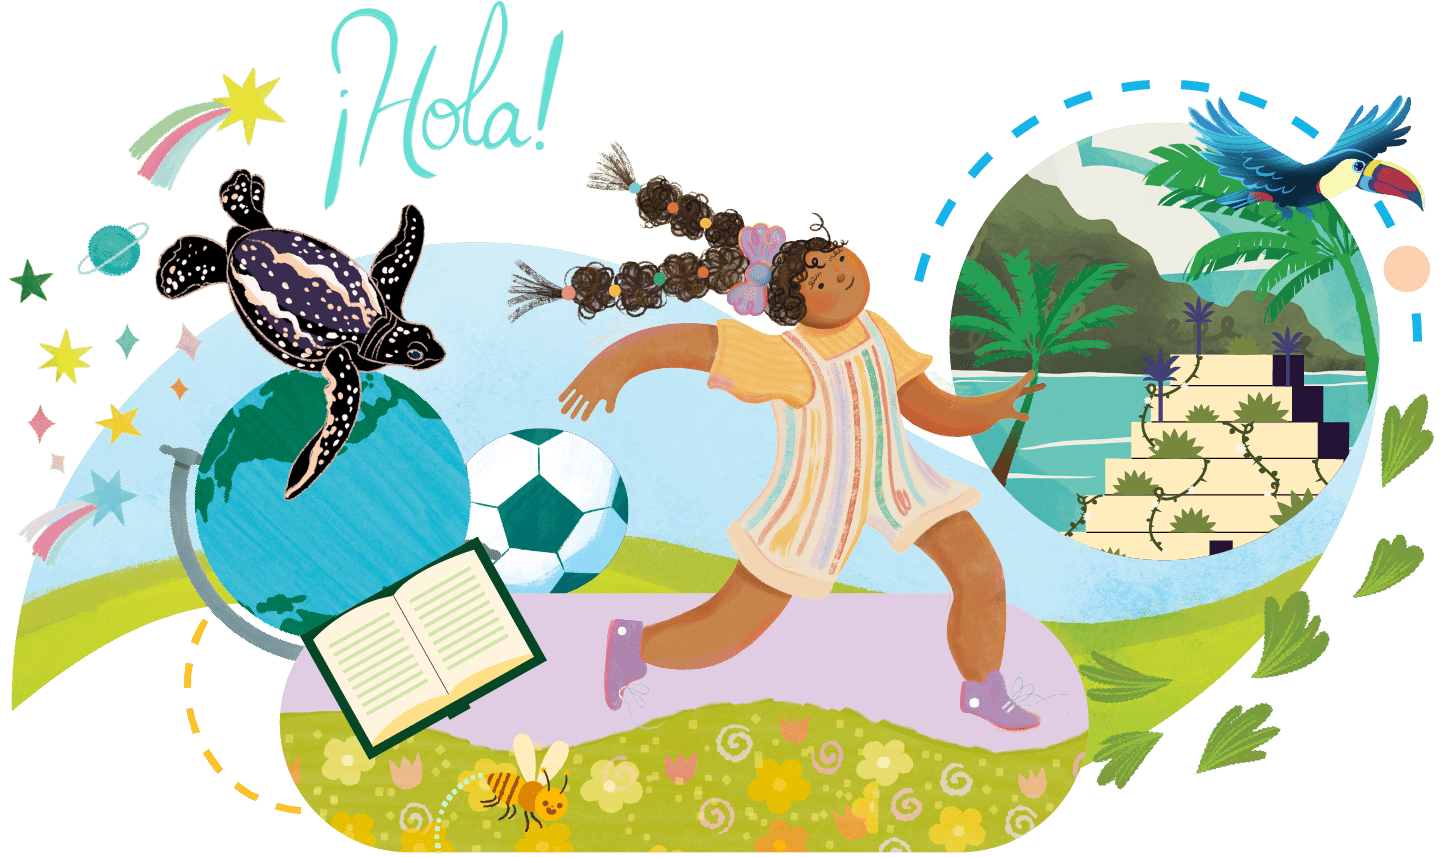 Ilustración de un niño alegre participando en el programa de lectura de CKLA, jugando fútbol junto a un libro abierto, con una tortuga, un loro y un exuberante paisaje tropical rodeándolos. La palabra 